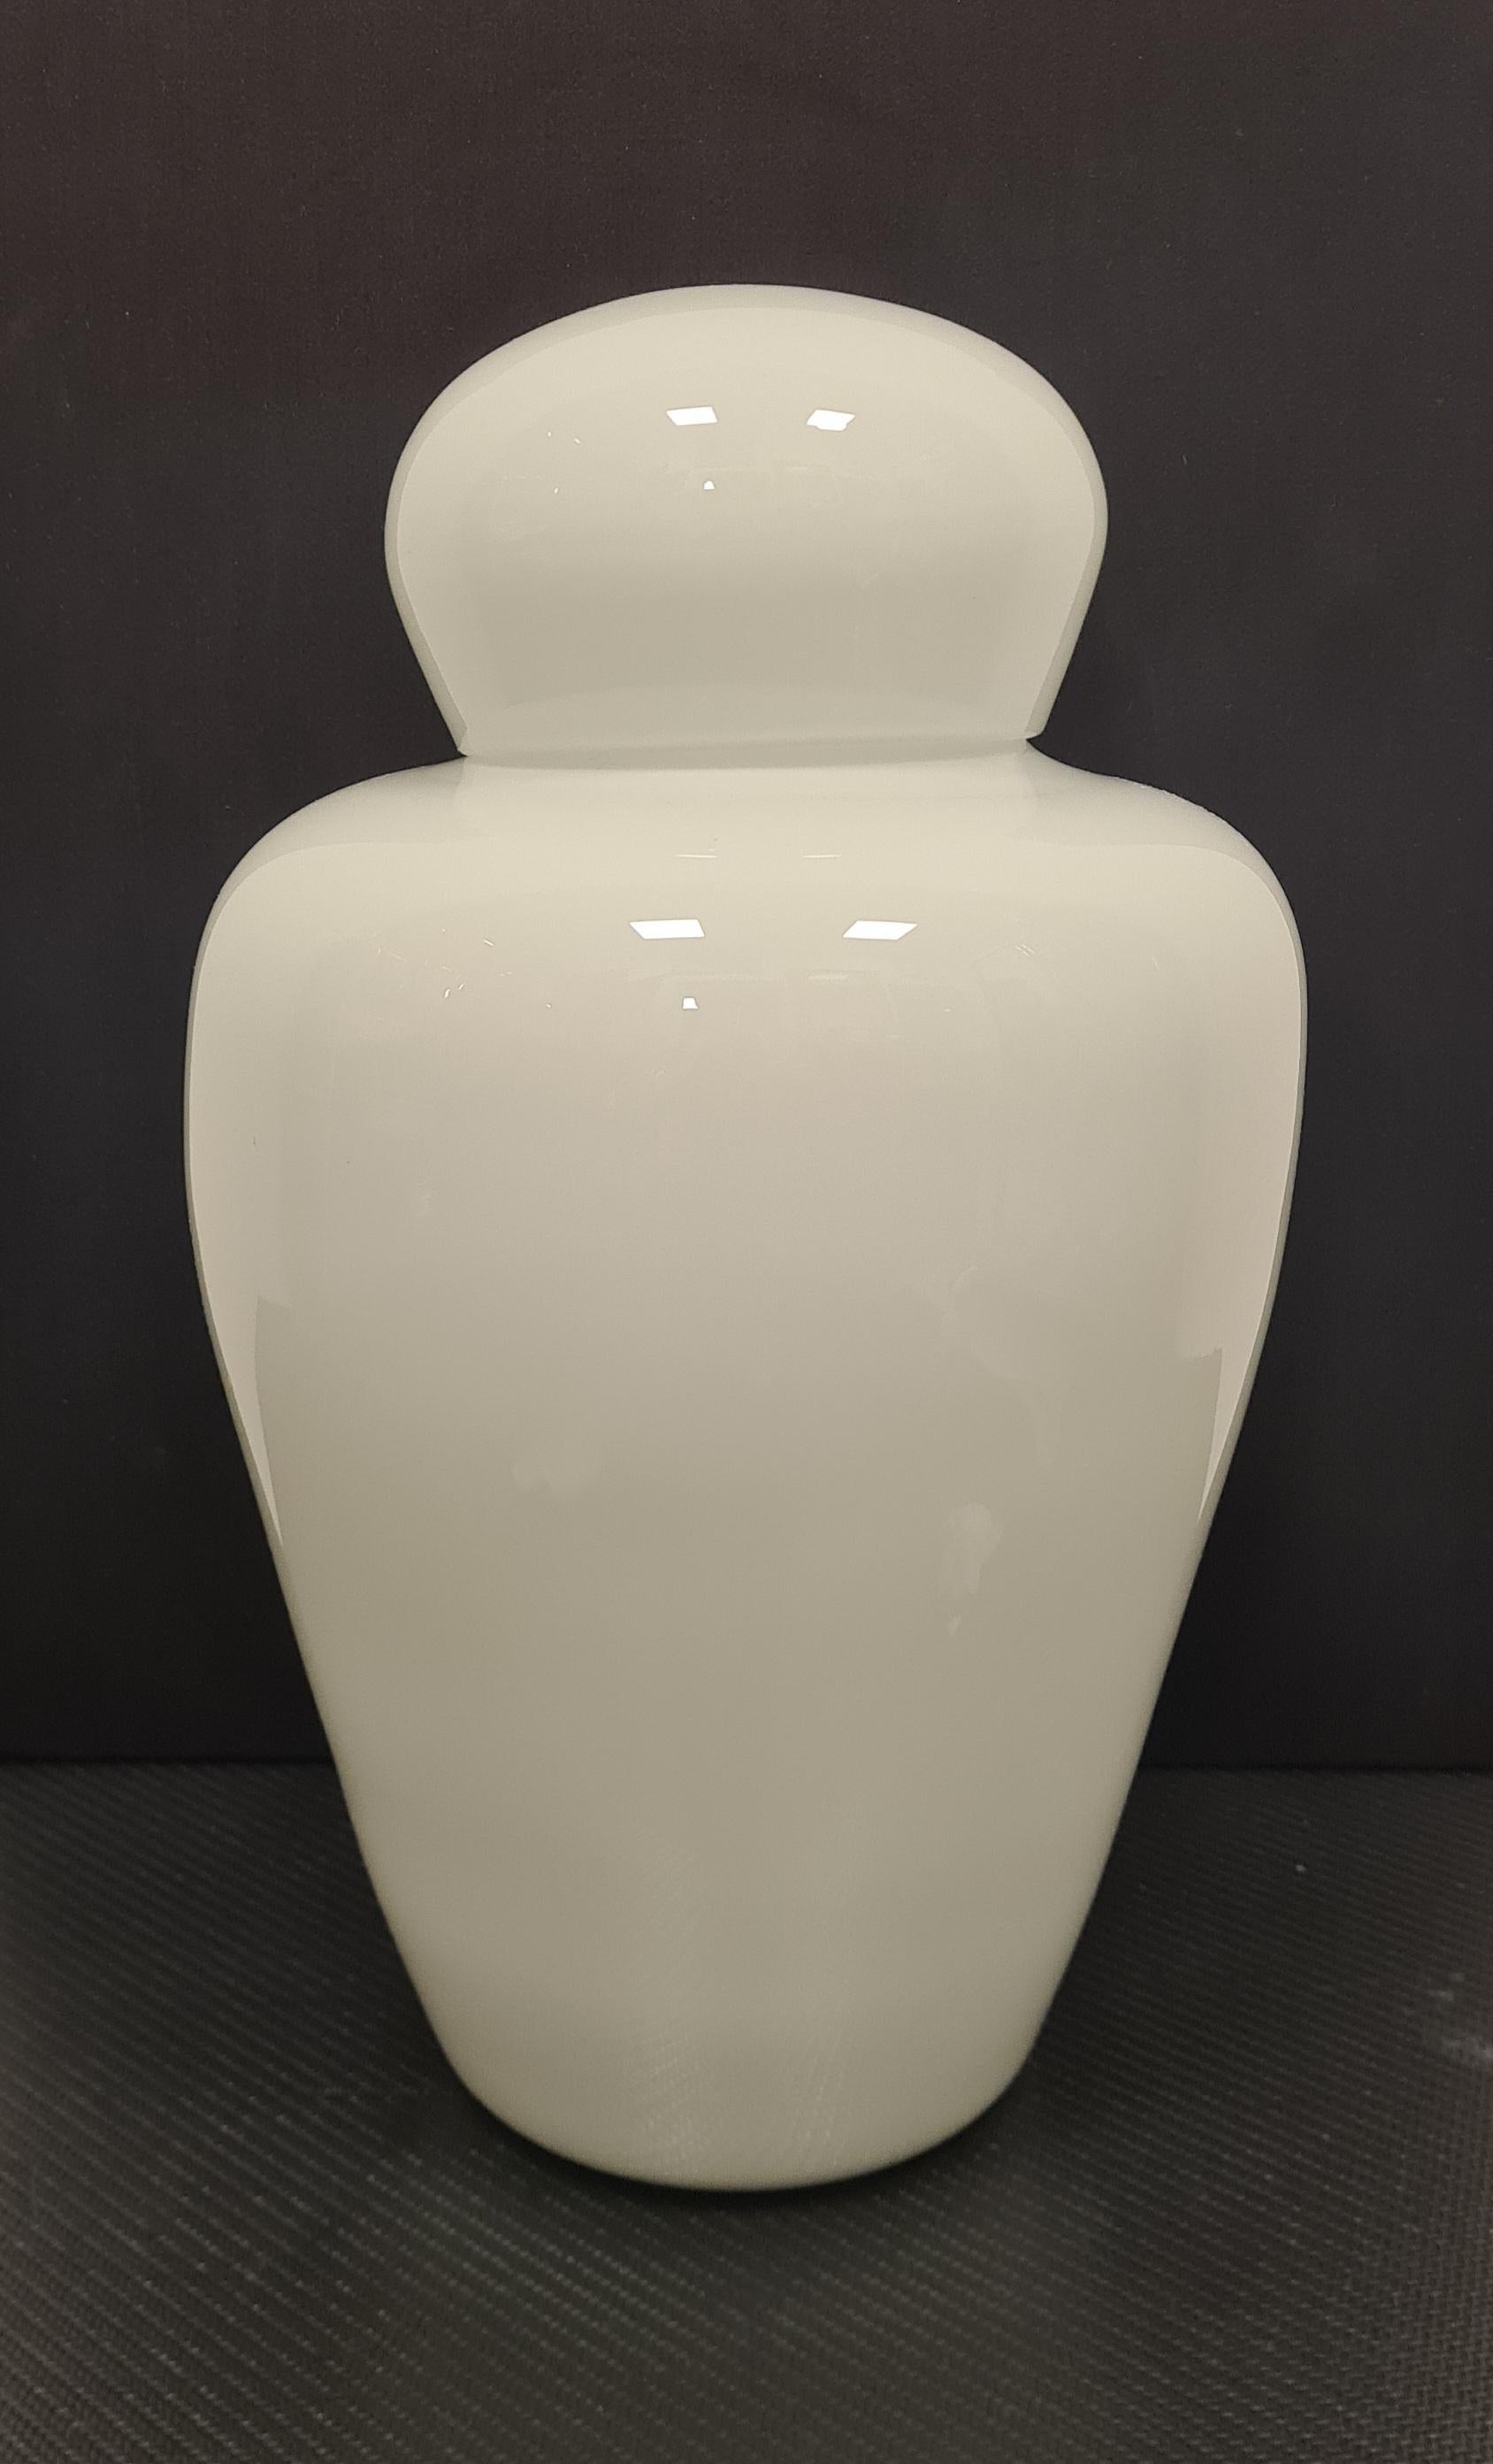 Vase de la série chinoise dessinée par Tobia Scarpa pour Venini.

Vase élégant avec couvercle en verre blanc stratifié.

La série Cinesi a été conçue par Carlo Scarpa dans les années 1940. Son fils Tobia, à partir des années 1960, a réalisé de